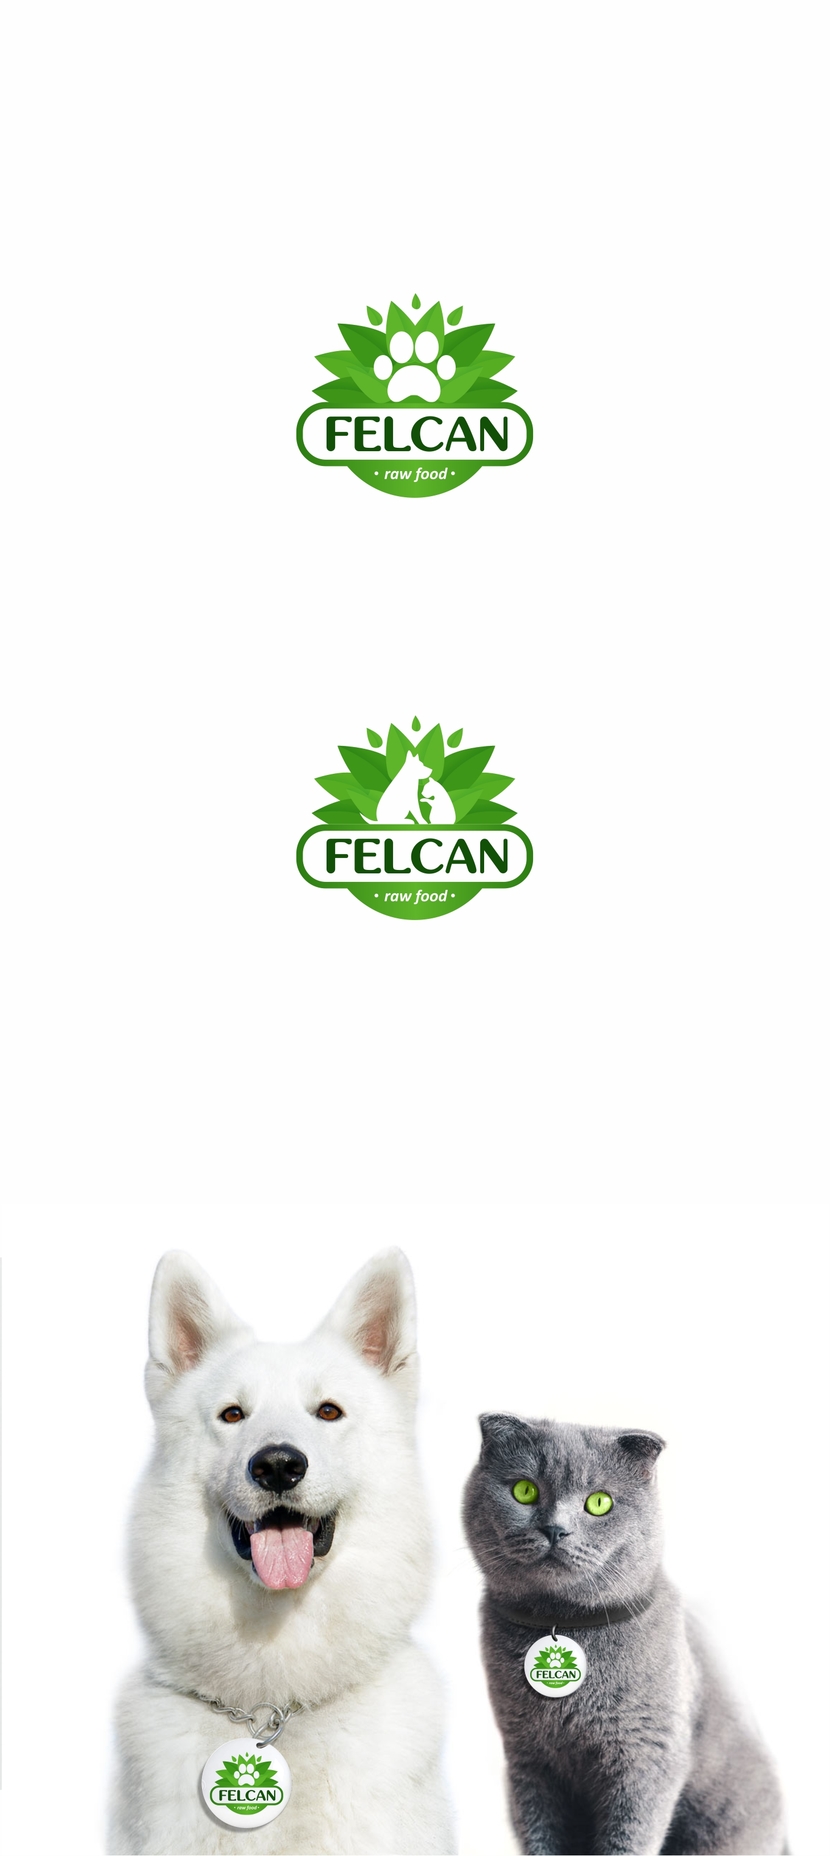 такой вот логотип.. можно с лапкой сделать или с самими животными.  Легкий, свежий, экологичный..  легко вписывается в круг, что делает его удобным в использовании на значках, брелках и др. сувенирной продукции, а также для использования на сайте в виде иконки - Разработка логотипа и ФС для компании, производящей здоровое питание для собак и кошек, разработанное по системе BARF.